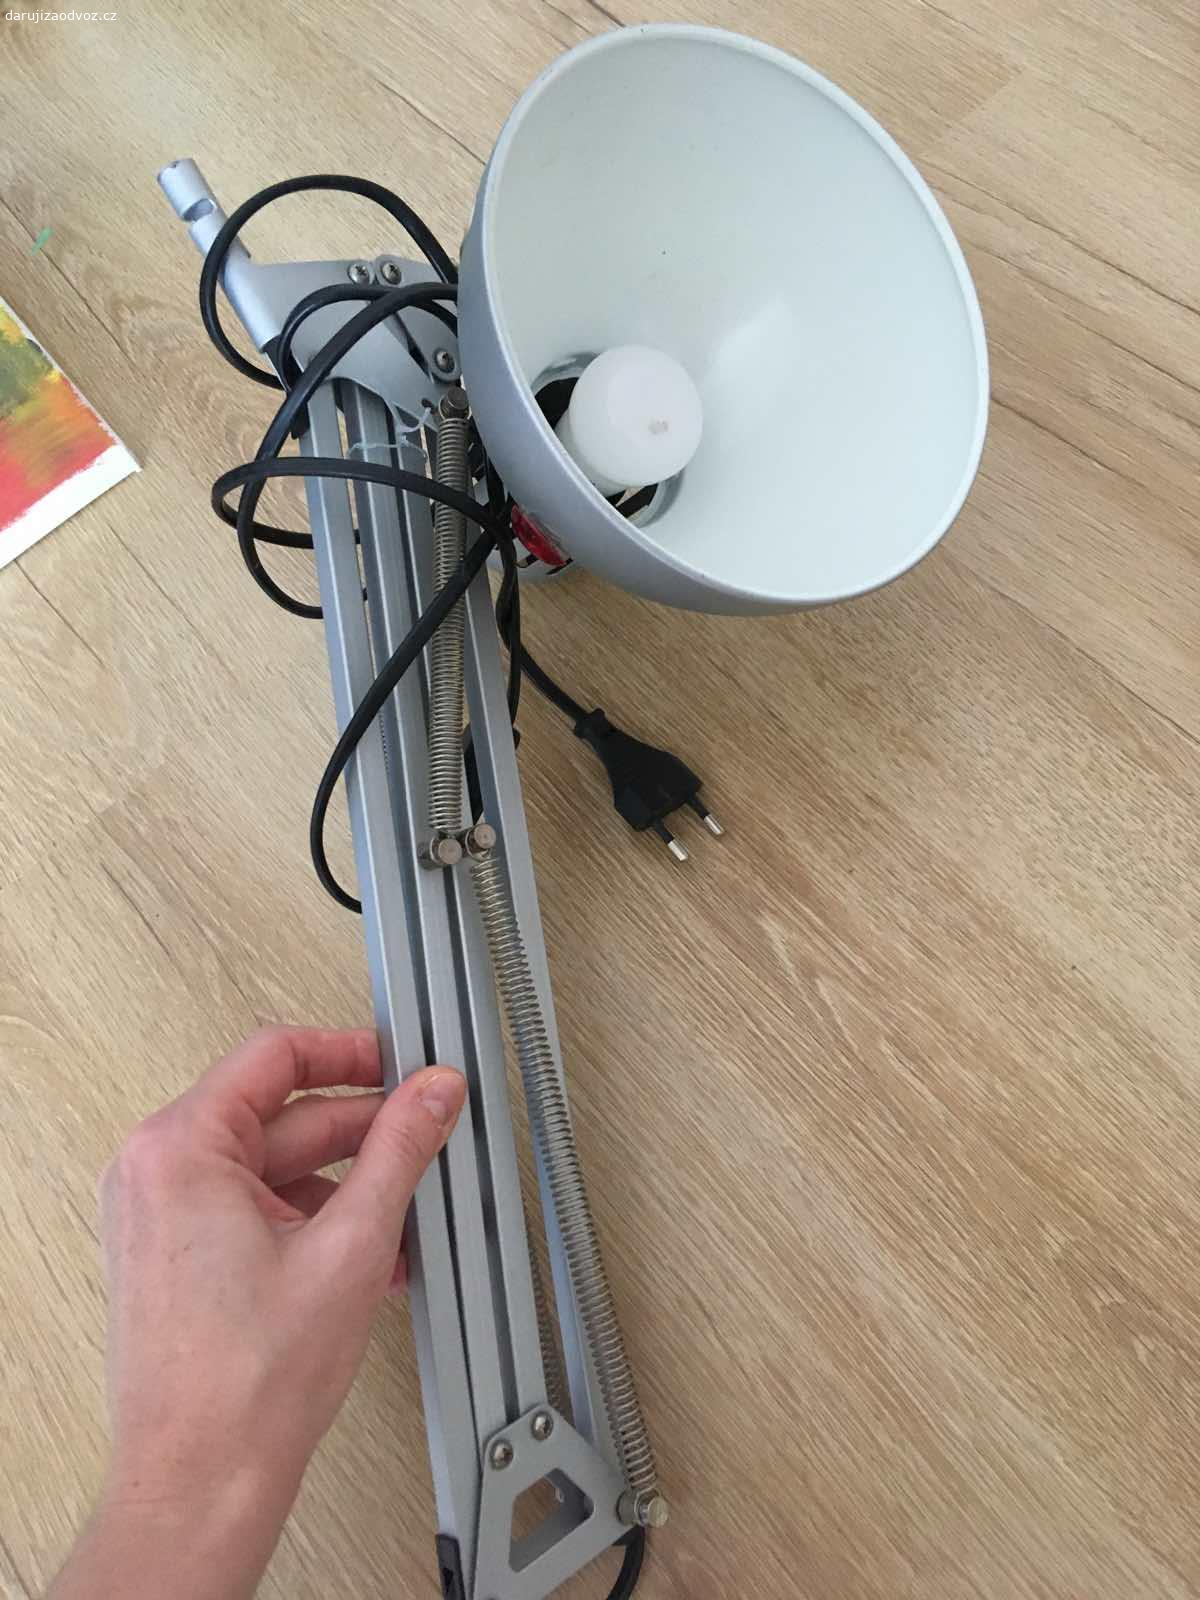 lampička kovová. IKEA kovová lampička, funkční, svítí, ale nemůžeme najít uchycení ke stolu, takže nemá jak stát